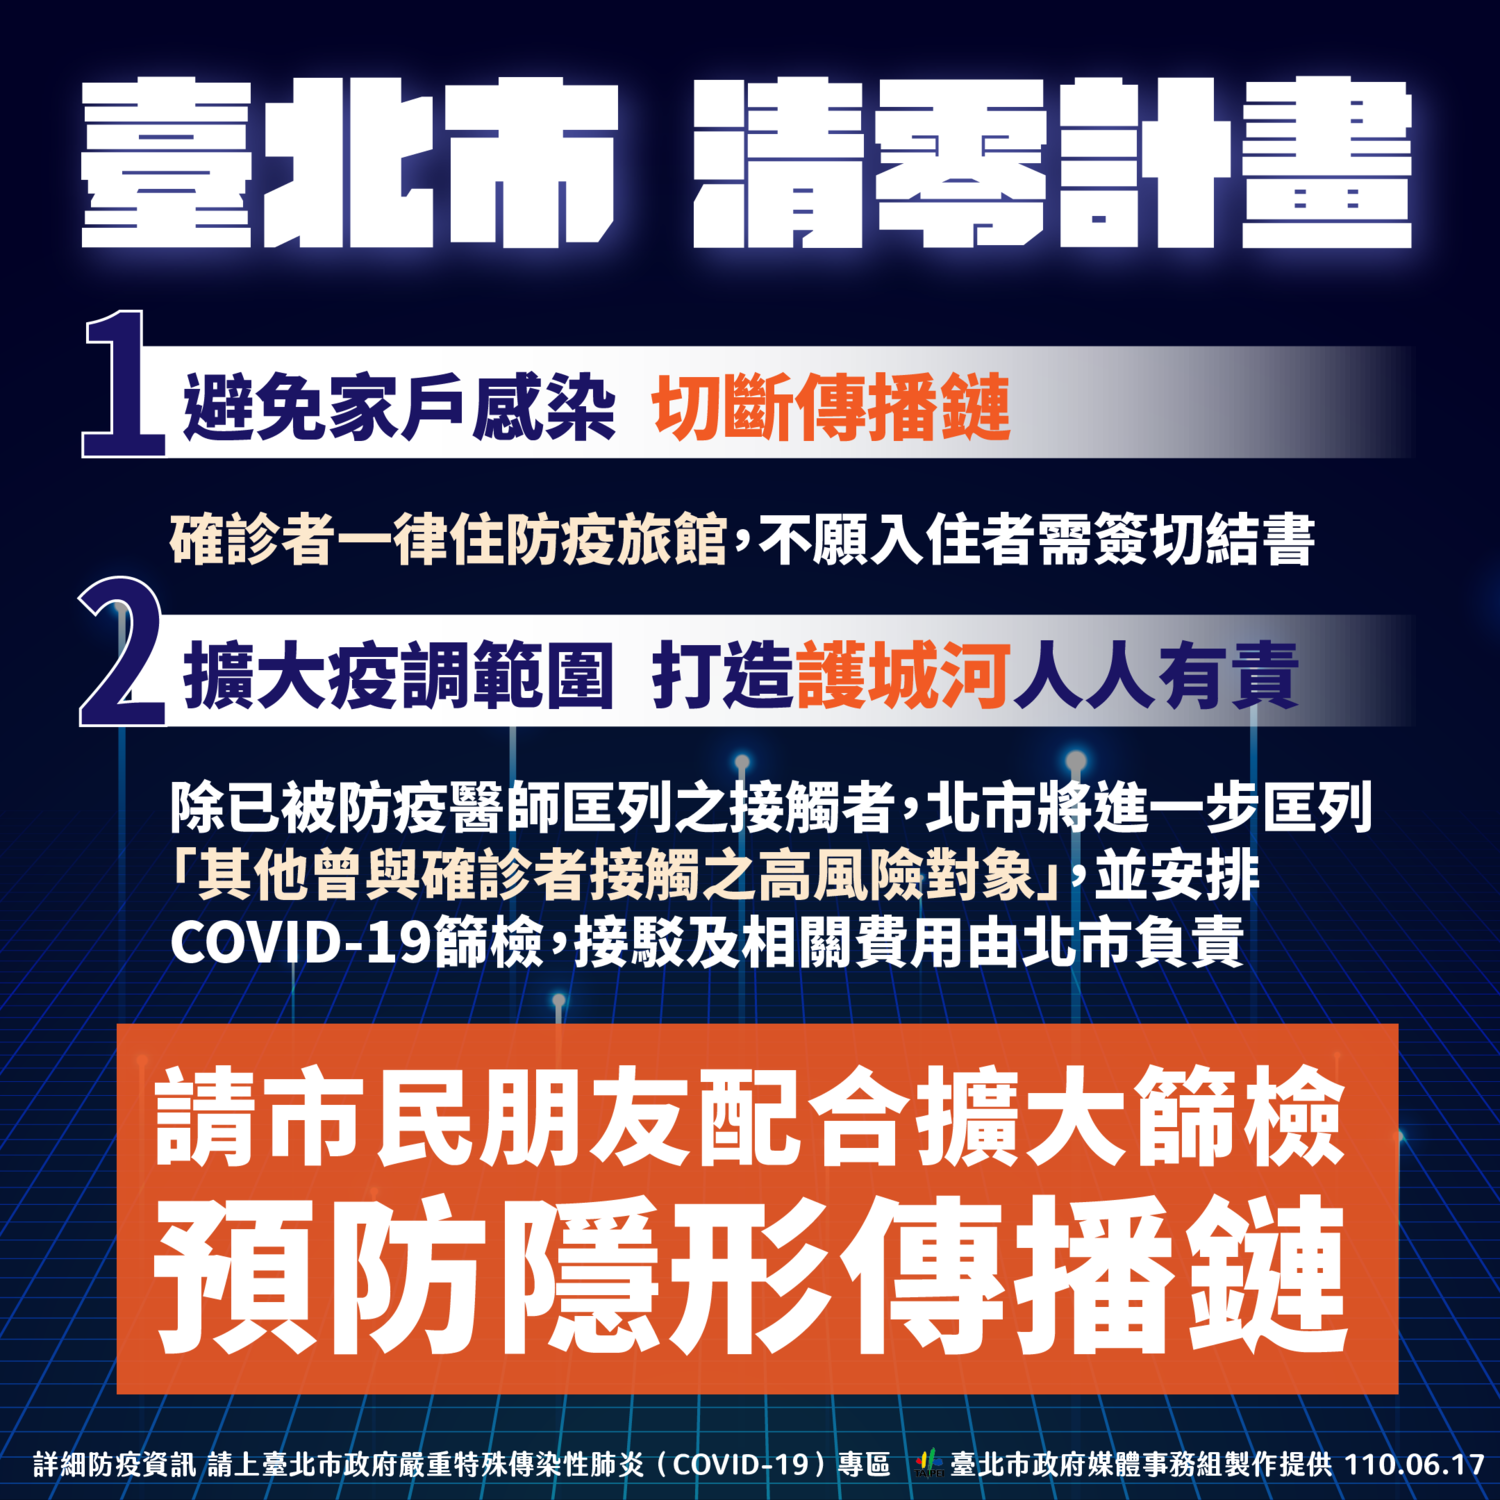 Hai tiêu chuẩn của “台北市清零計畫” (Kế hoạch đưa dịch bệnh về con số không của thành phố Đài Bắc). (Nguồn ảnh: chính quyền thành phố Đài Bắc)